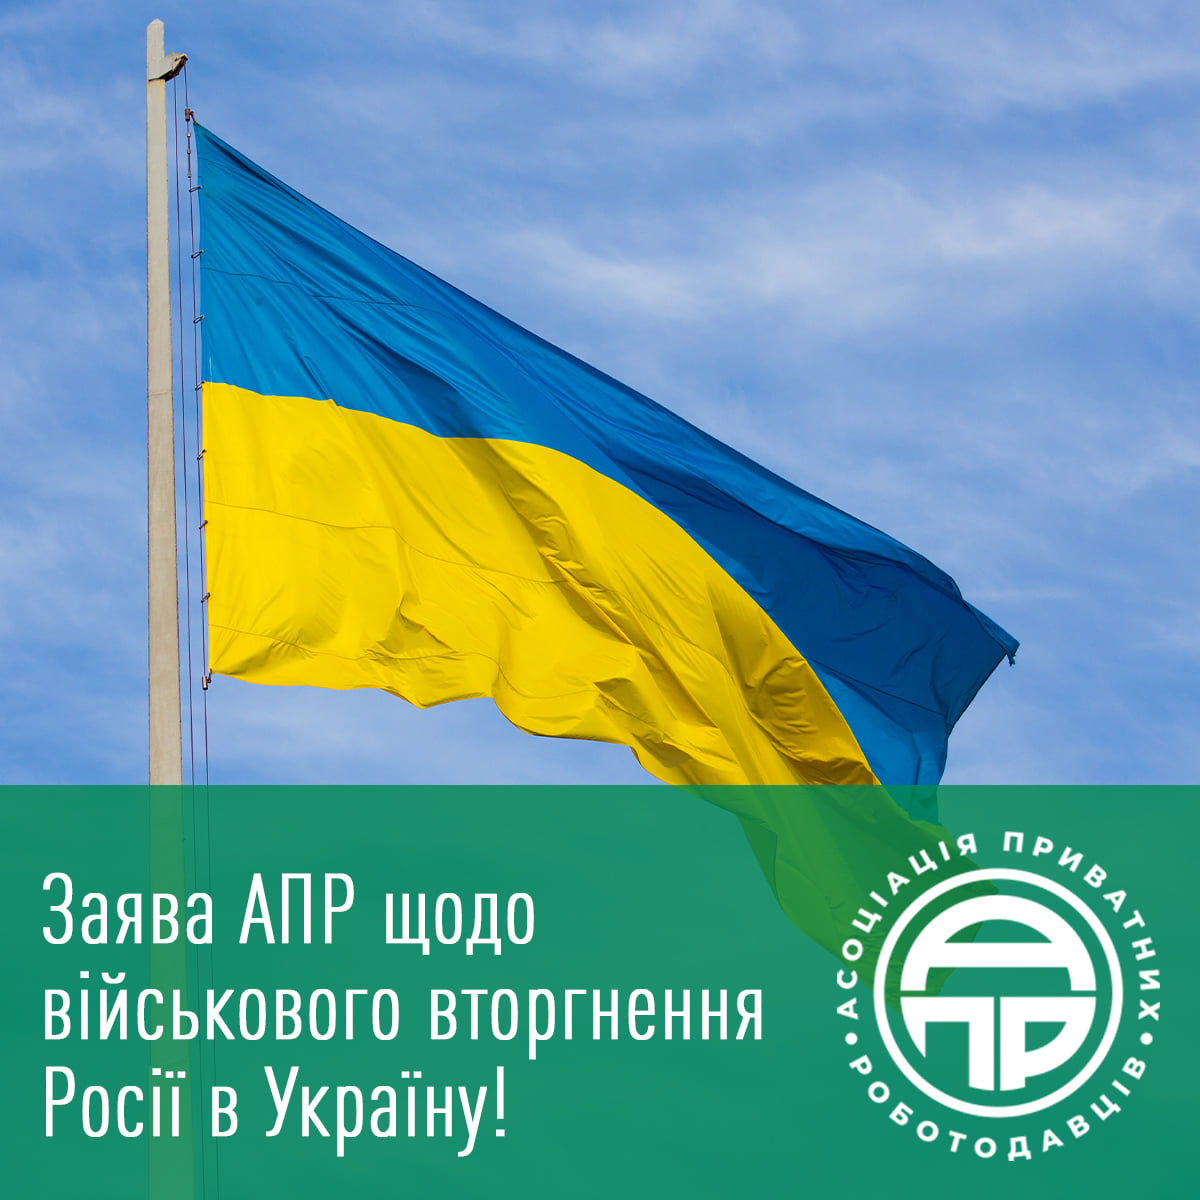 Заява АПР щодо військового вторгнення росії в Україну